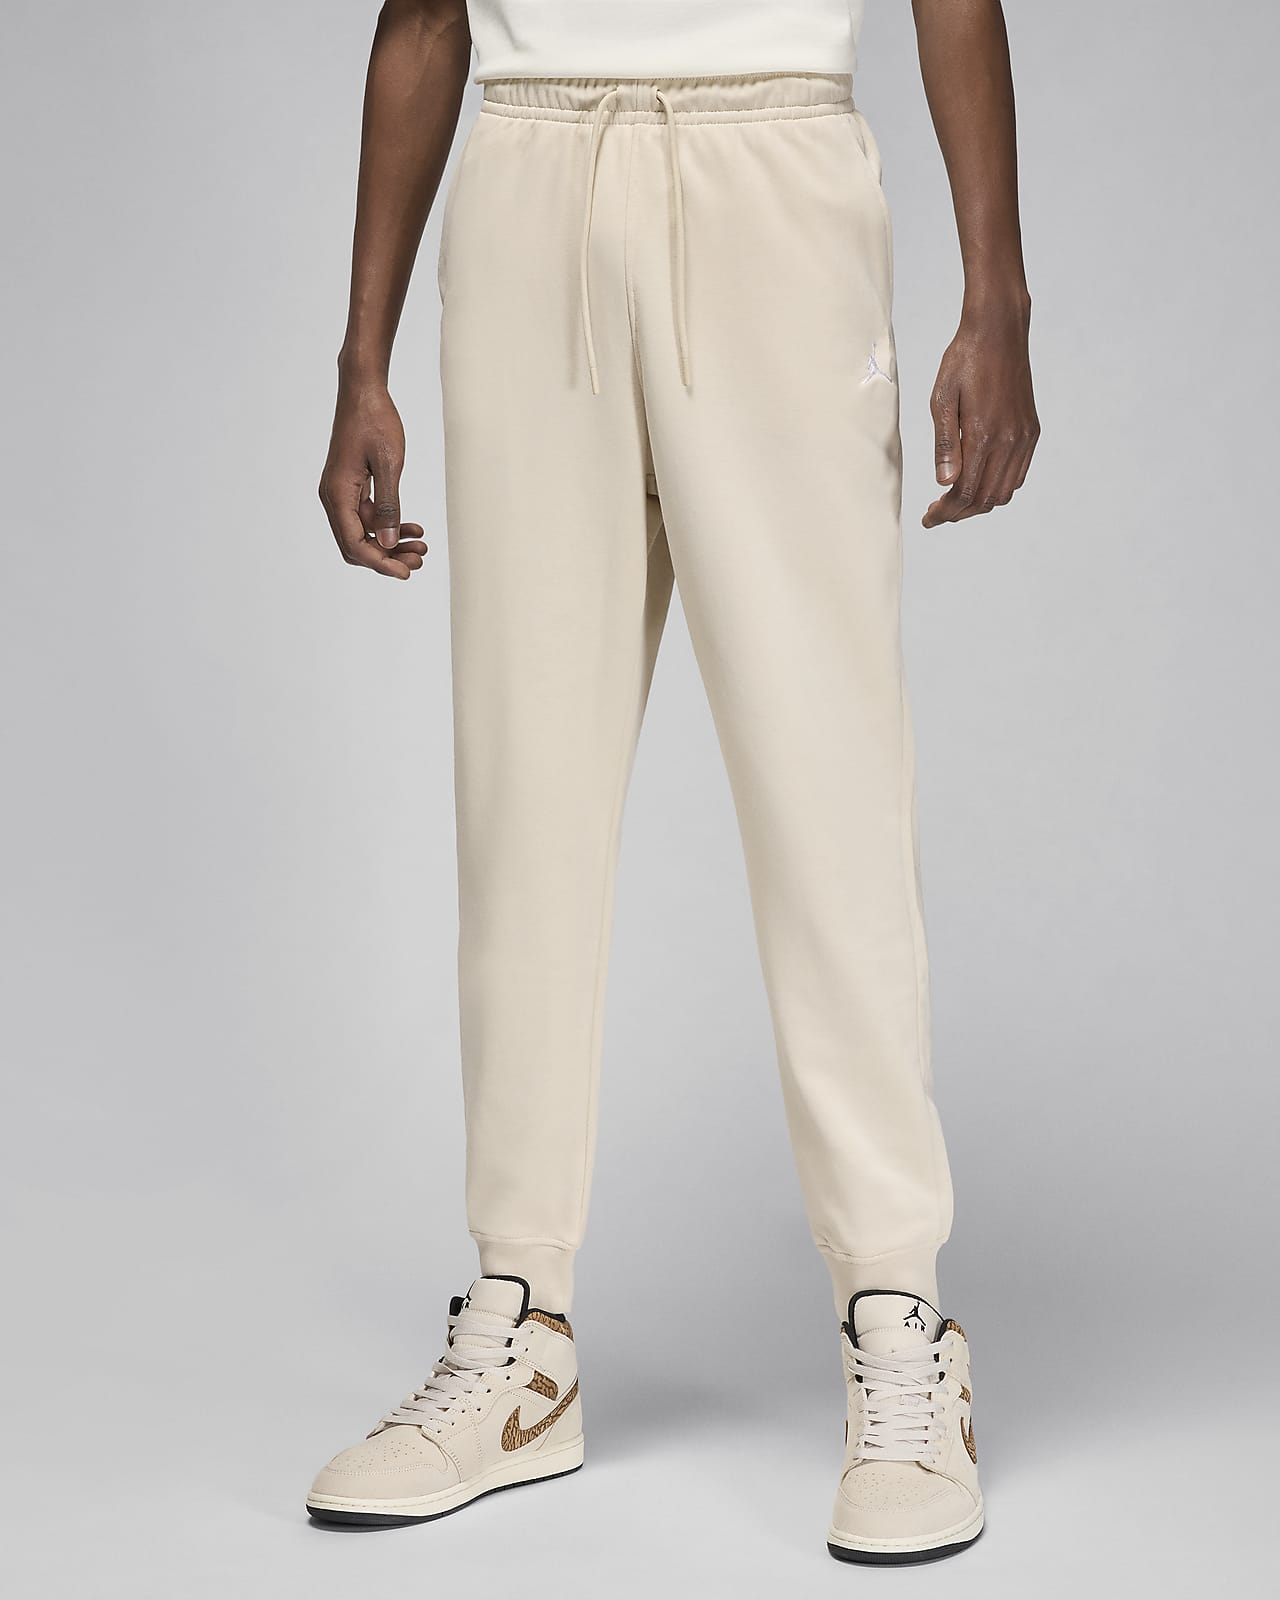 Ανδρικό παντελόνι φλις με ύφανση μπουκλέ στο εσωτερικό Jordan Essentials